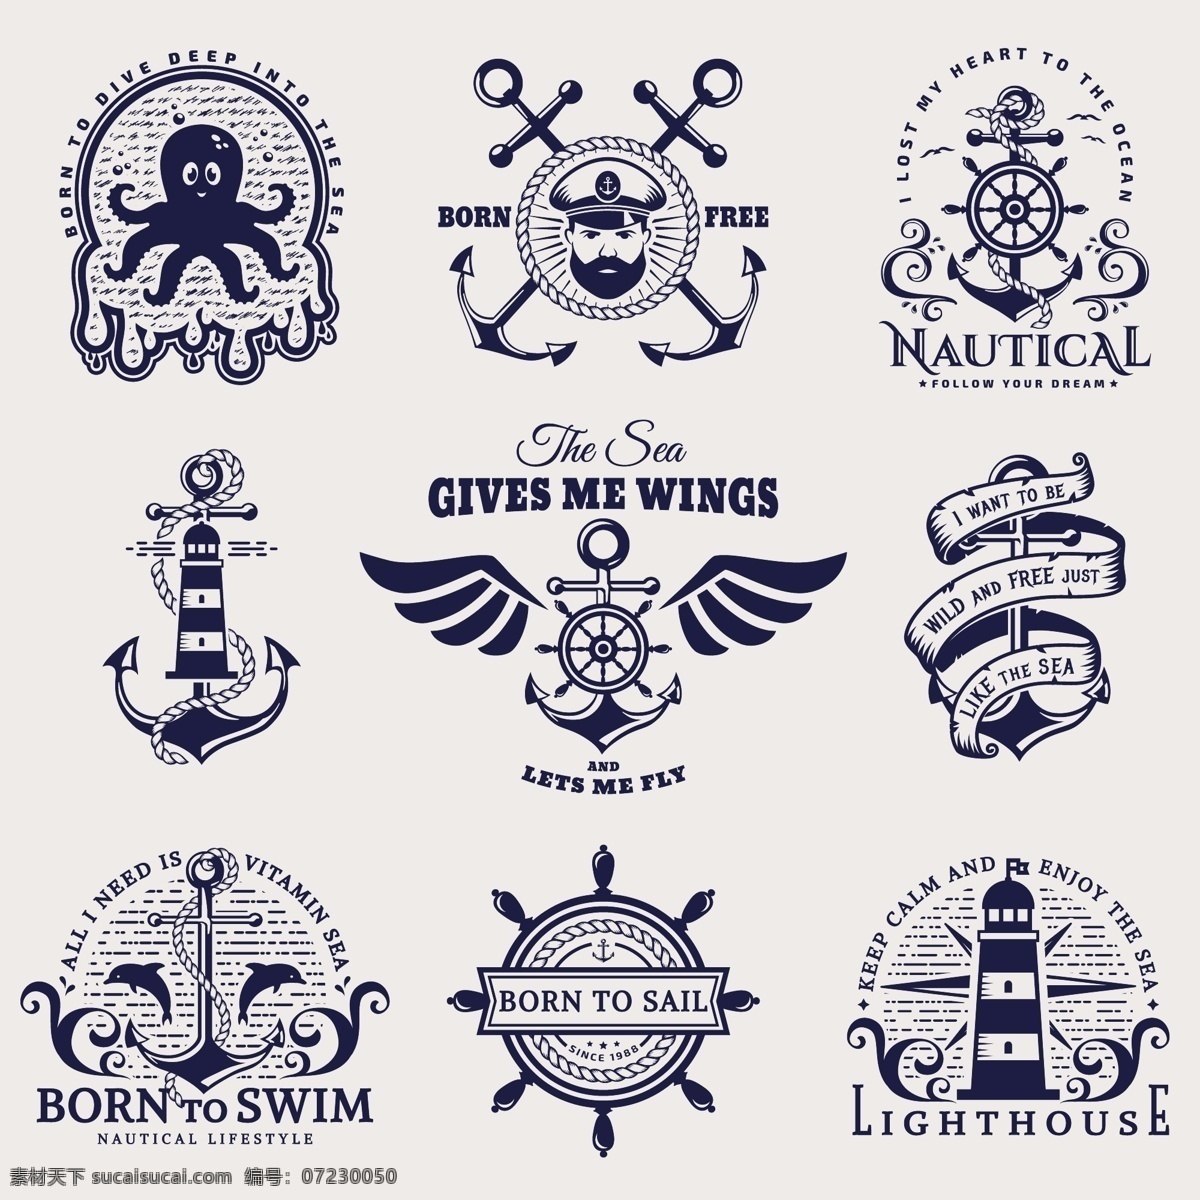 海洋图标 手绘海洋标识 海洋logo 海洋标签 海洋徽章 海洋标识 海洋标志 大海 帆船 船舵 船锚 徽章 标识 手绘海洋